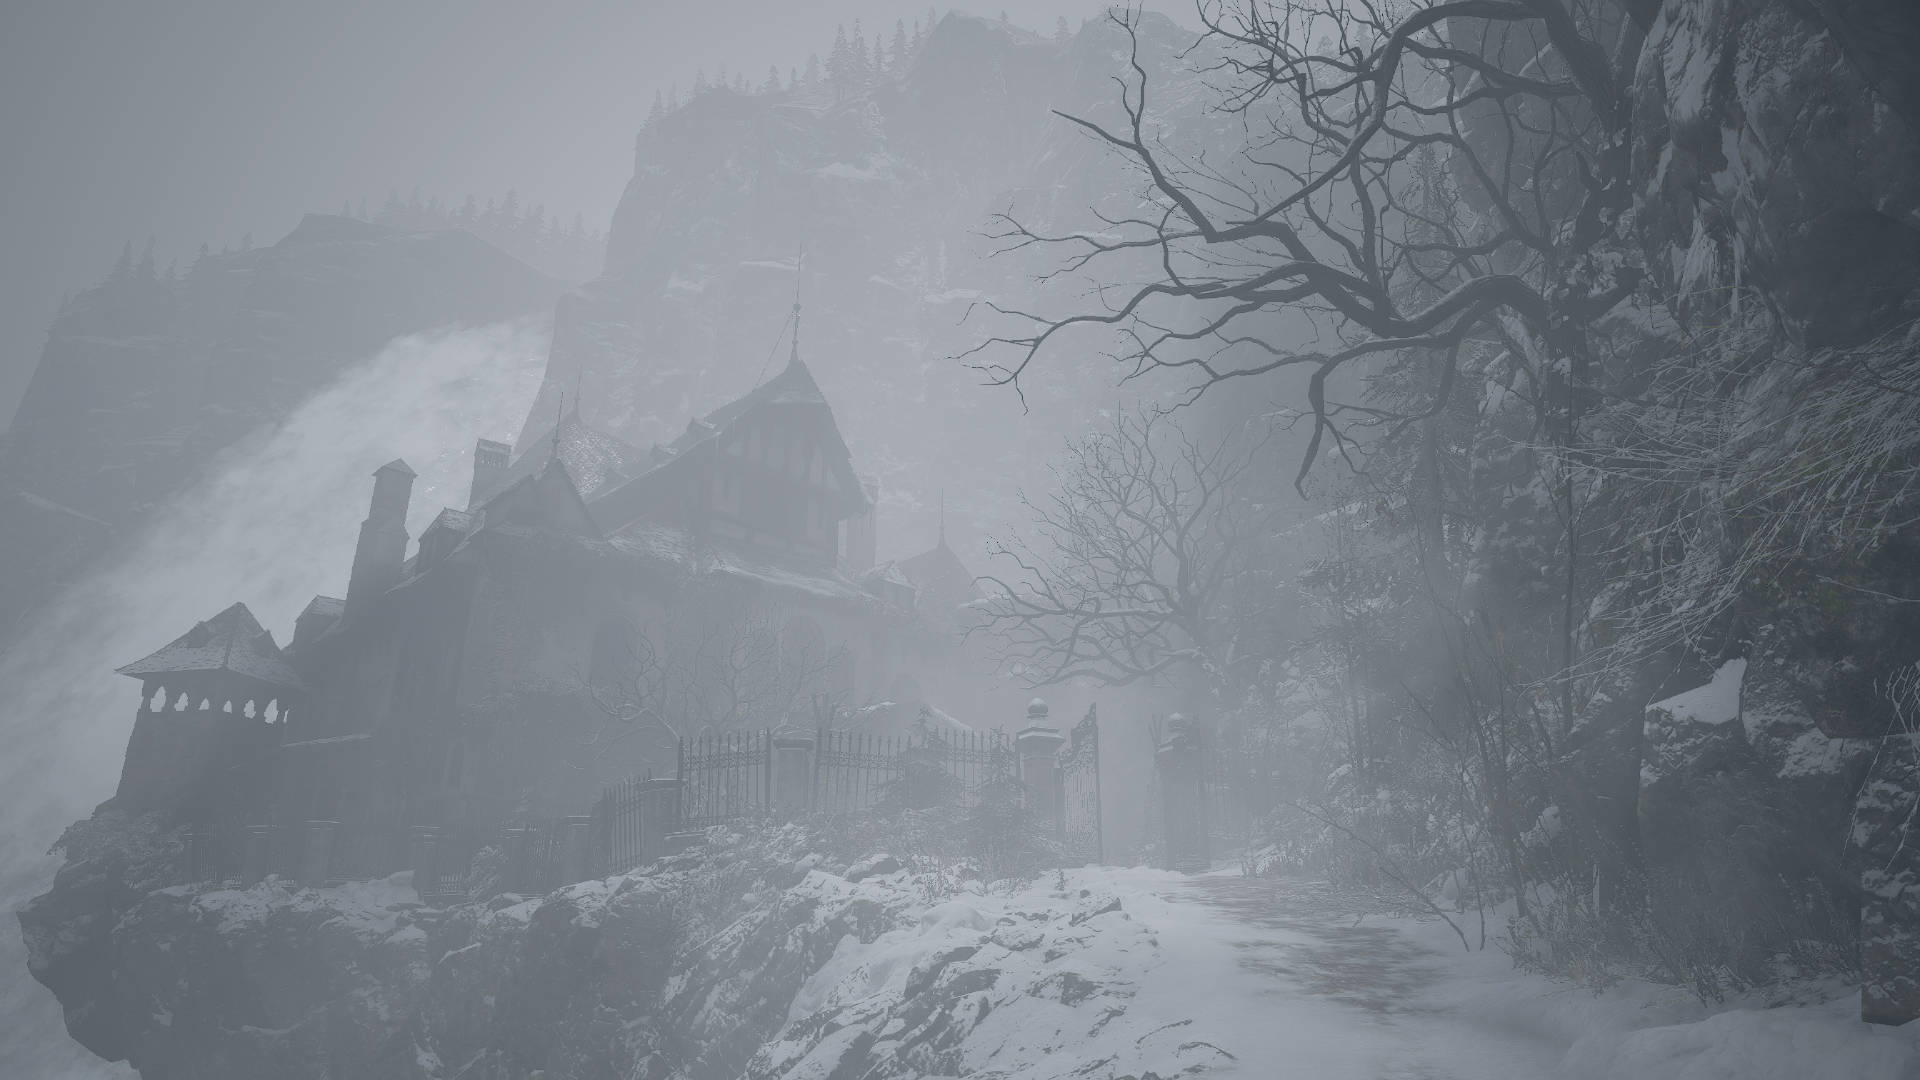 Resident Evil 8: Village Foggy View langsomt bevæger sig gennem den tågede landsby. Wallpaper